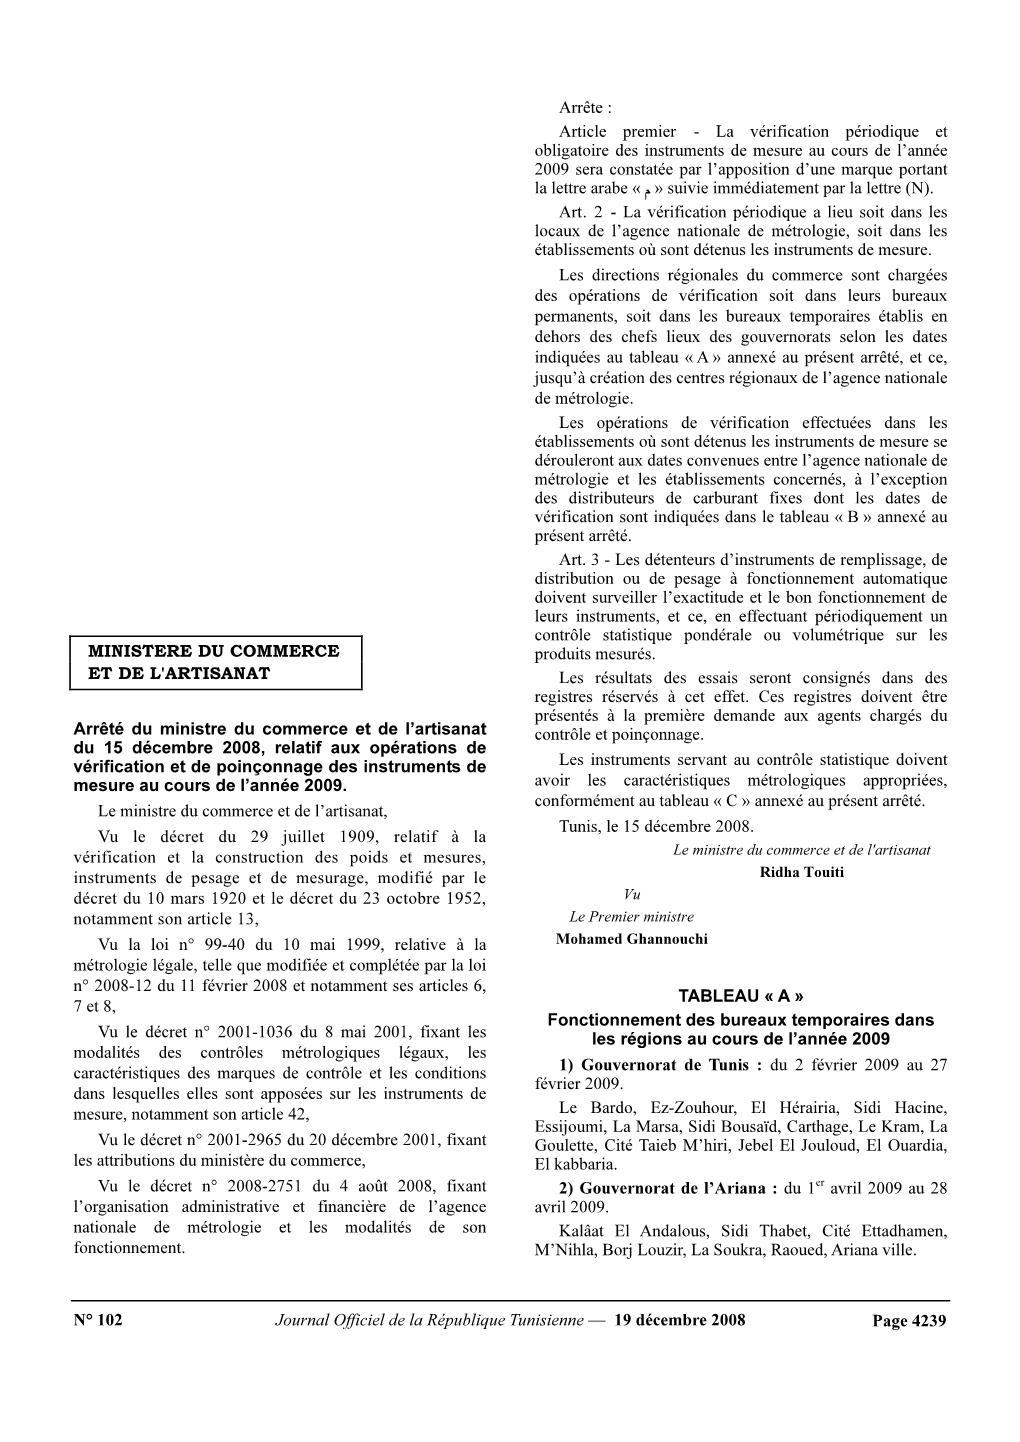 N° 102 Journal Officiel De La République Tunisienne — 19